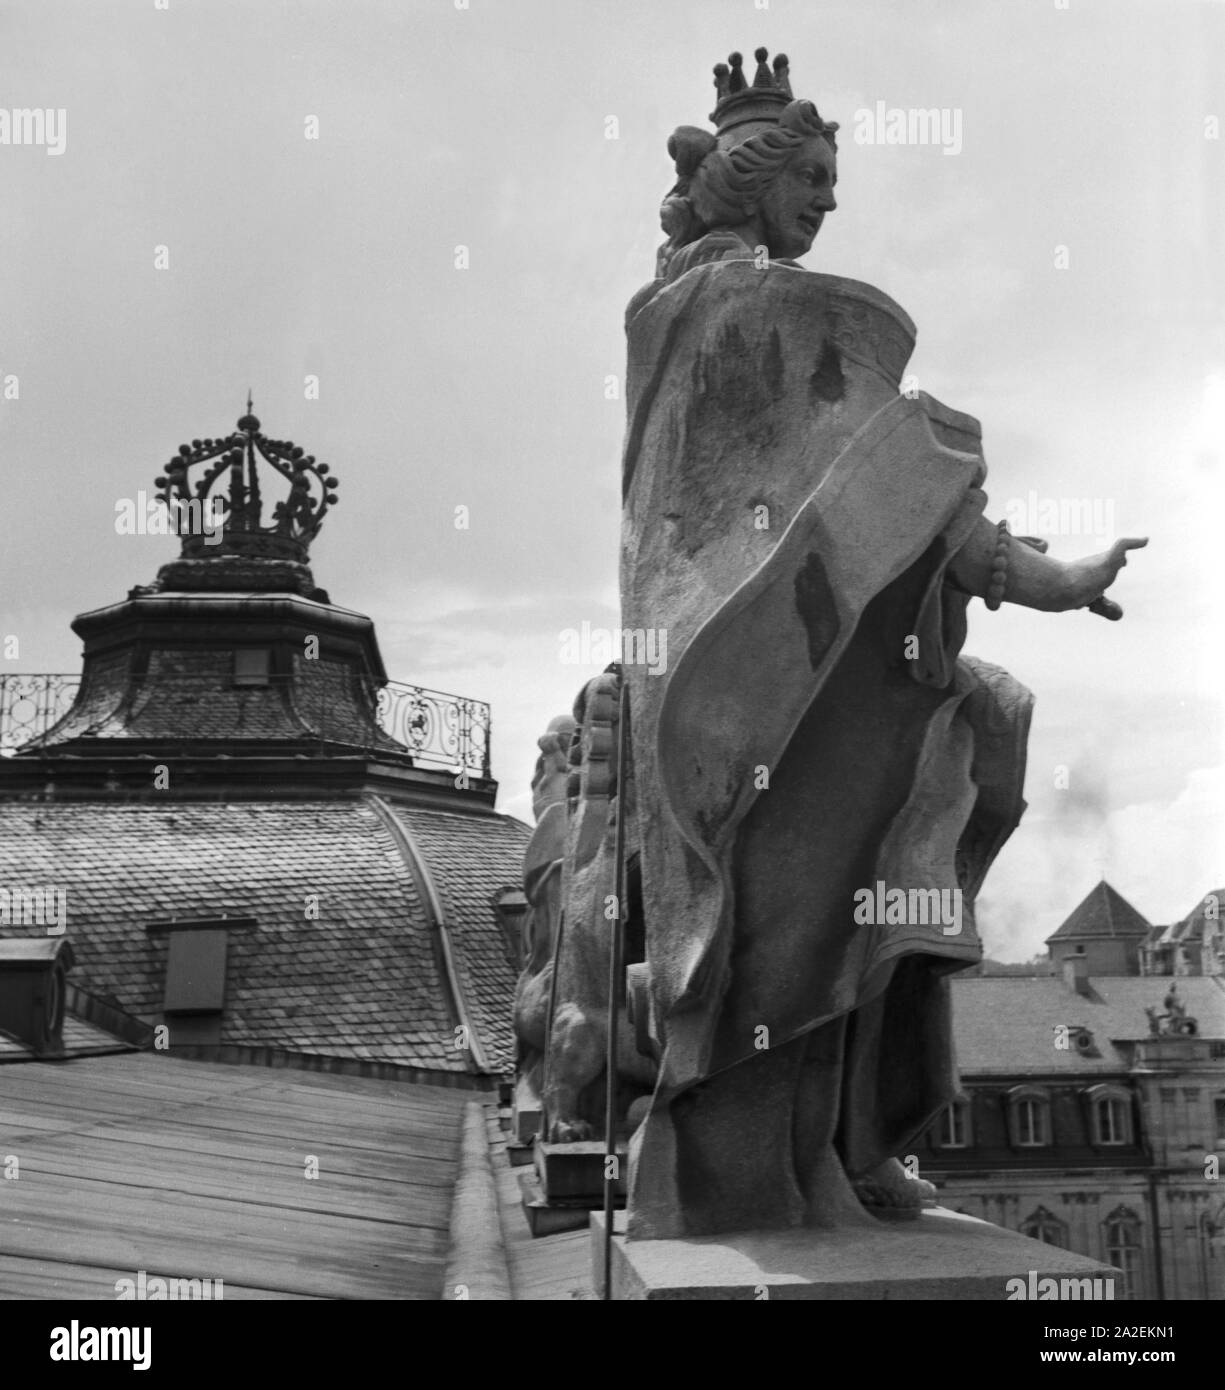 Statua auf dem Dach des Neuen Schlosses in Stoccarda, Deutschland 1930er Jahre. Statua sul tetto del nuovo castello a Stoccarda, Germania 1930s. Foto Stock